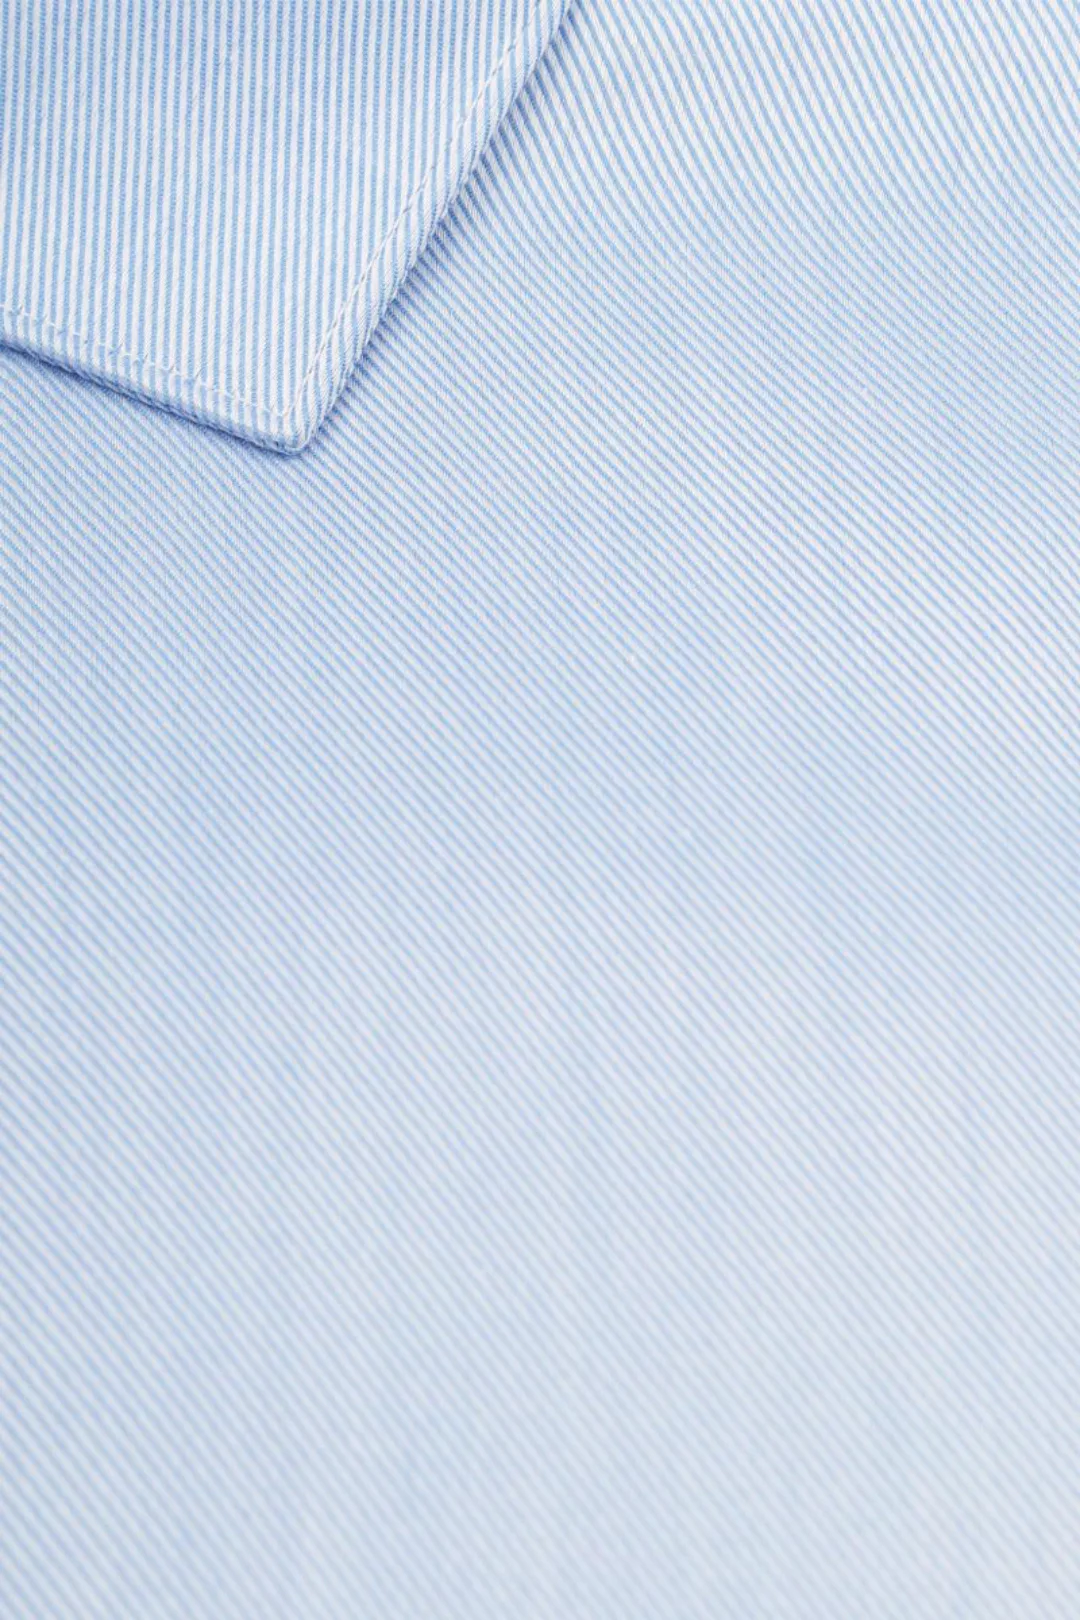 Suitable Hemd Blau DR-04 - Größe 39 günstig online kaufen